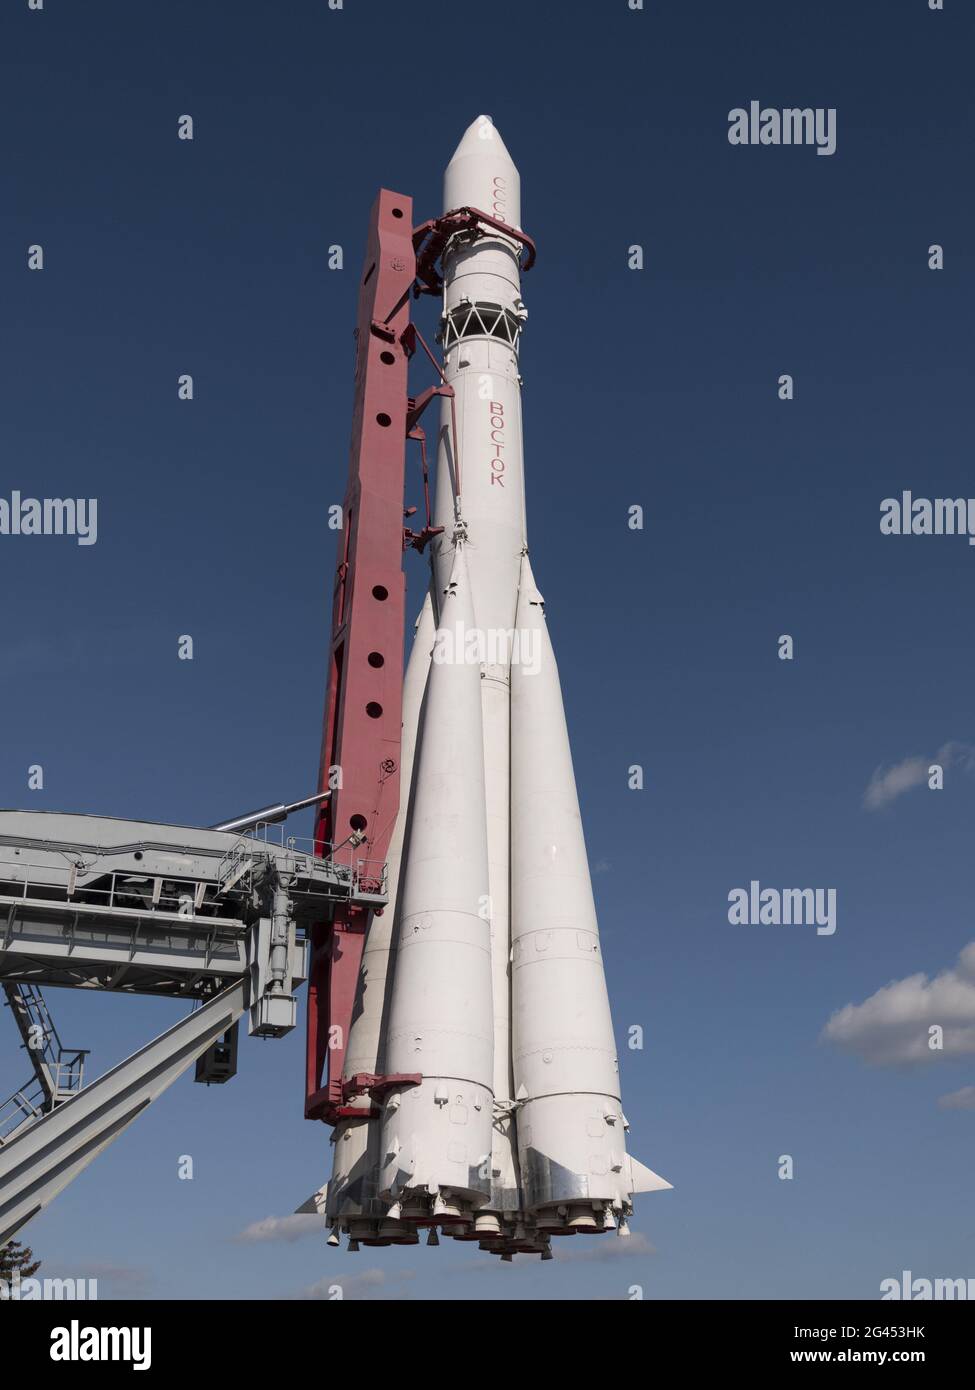 MOSKAU, RUSSLAND - 23. APRIL 2019: Booster-Rakete Vostok im Pavillon Space auf VDNCH. Zu Fuß Moskowiten und Touristen Stockfoto